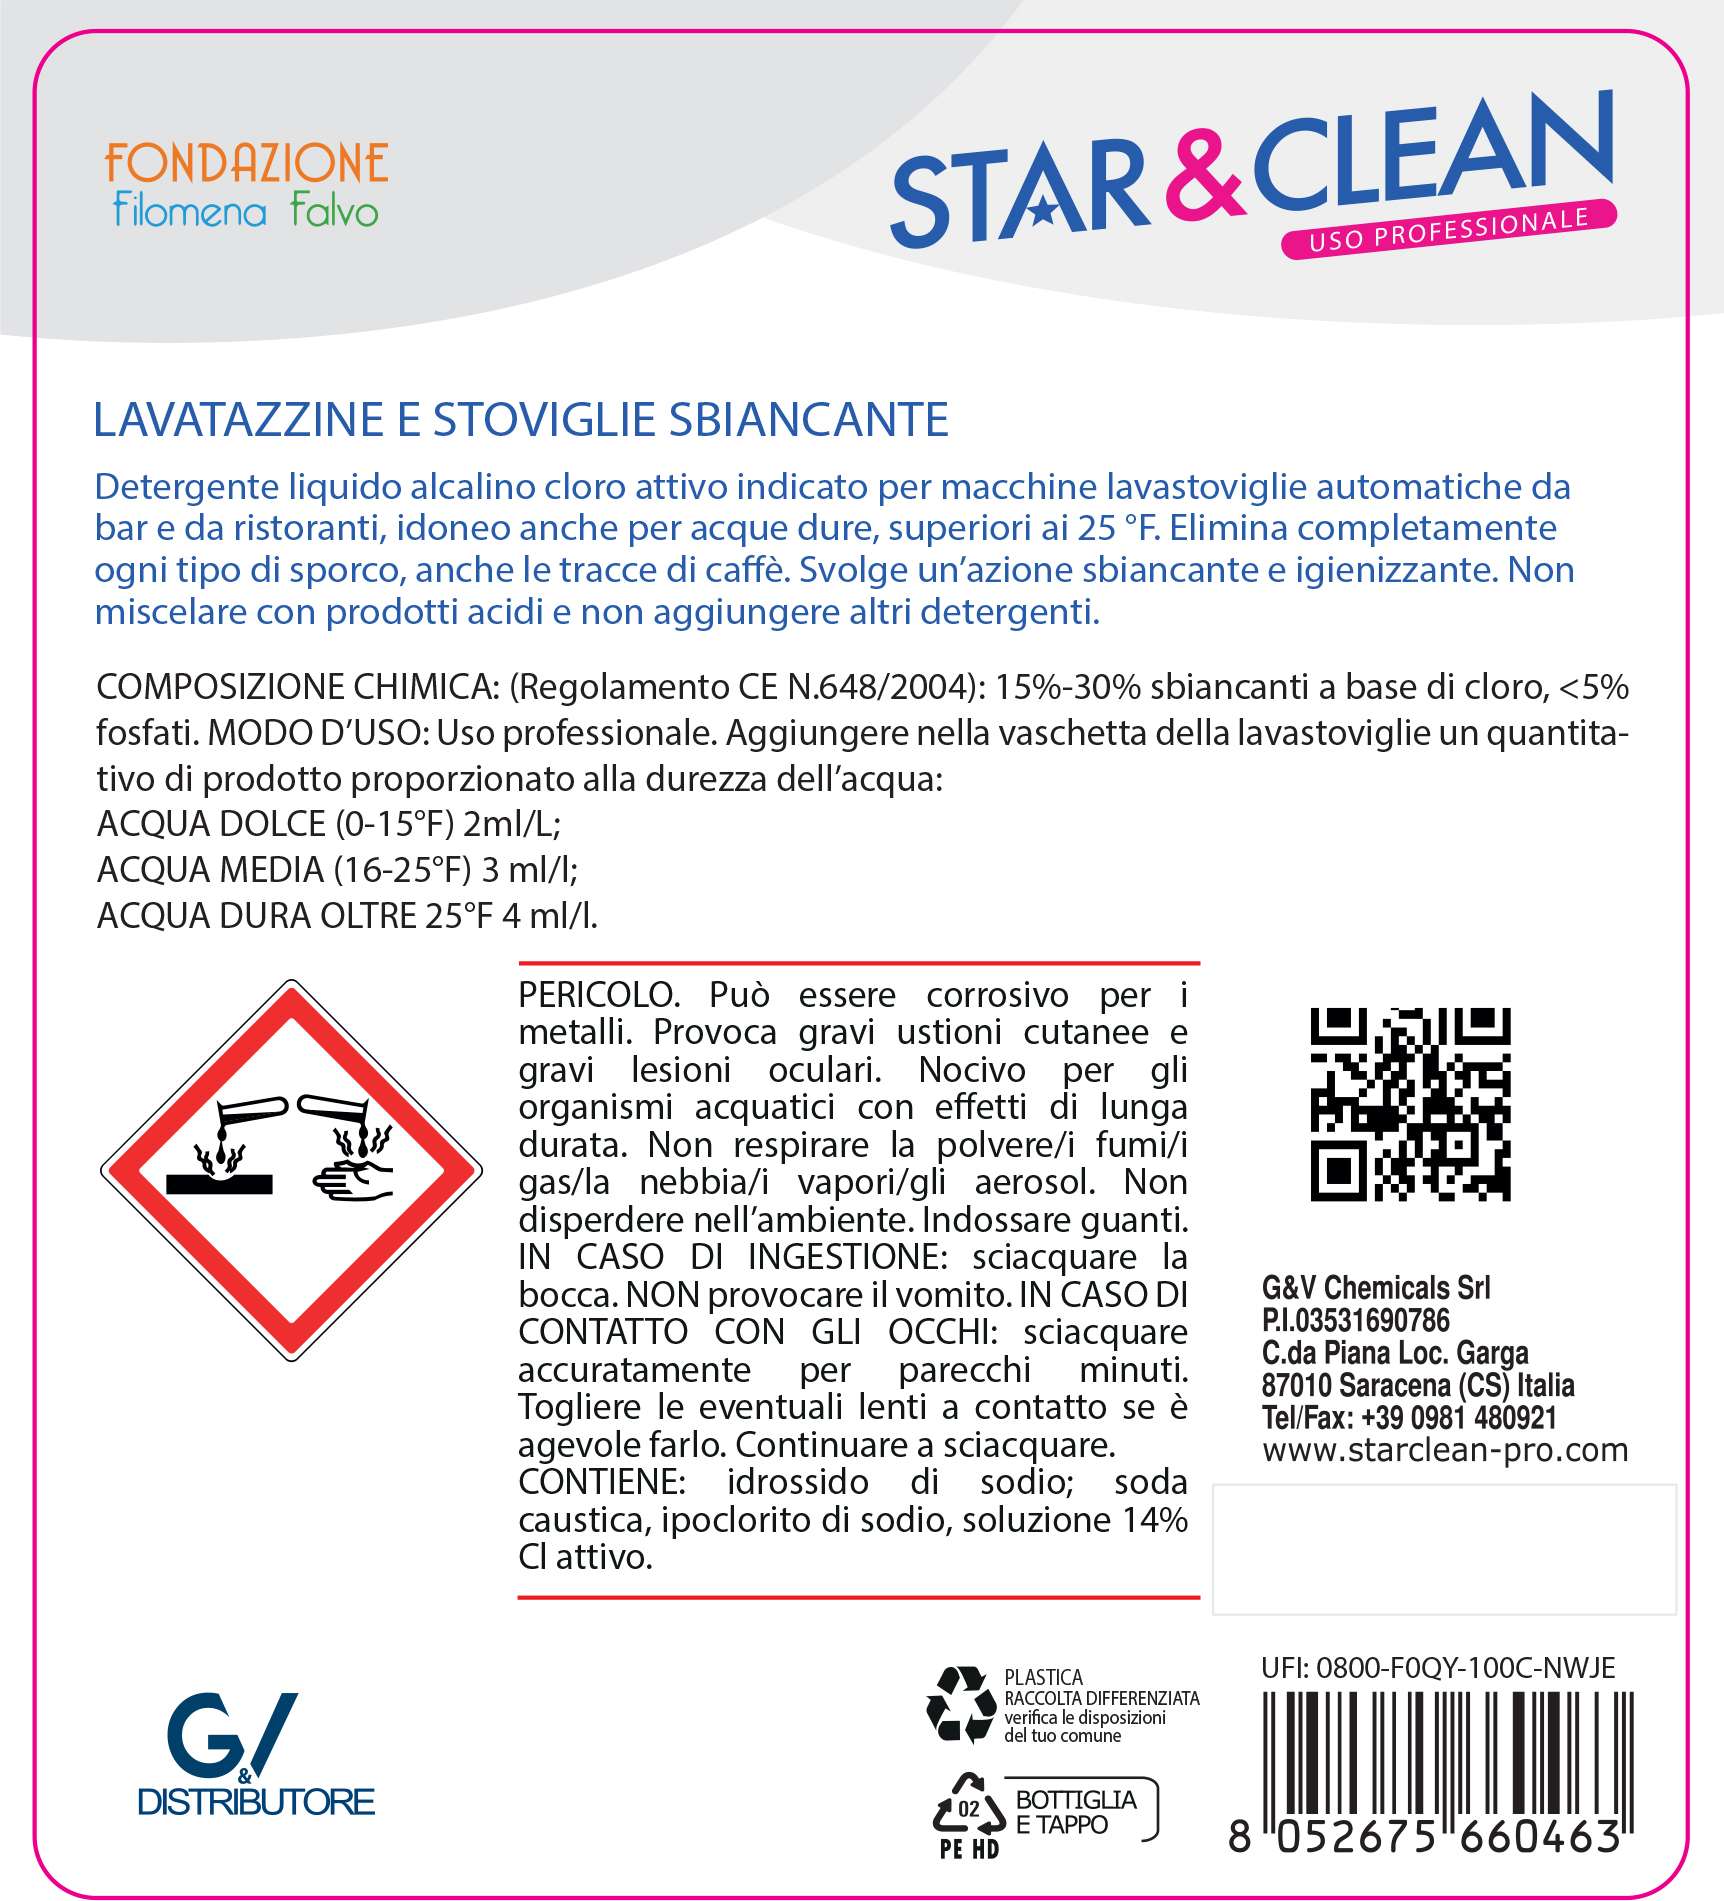 Detersivi concentrati - star clean 129 - lavatazzine e stoviglie sbiancante